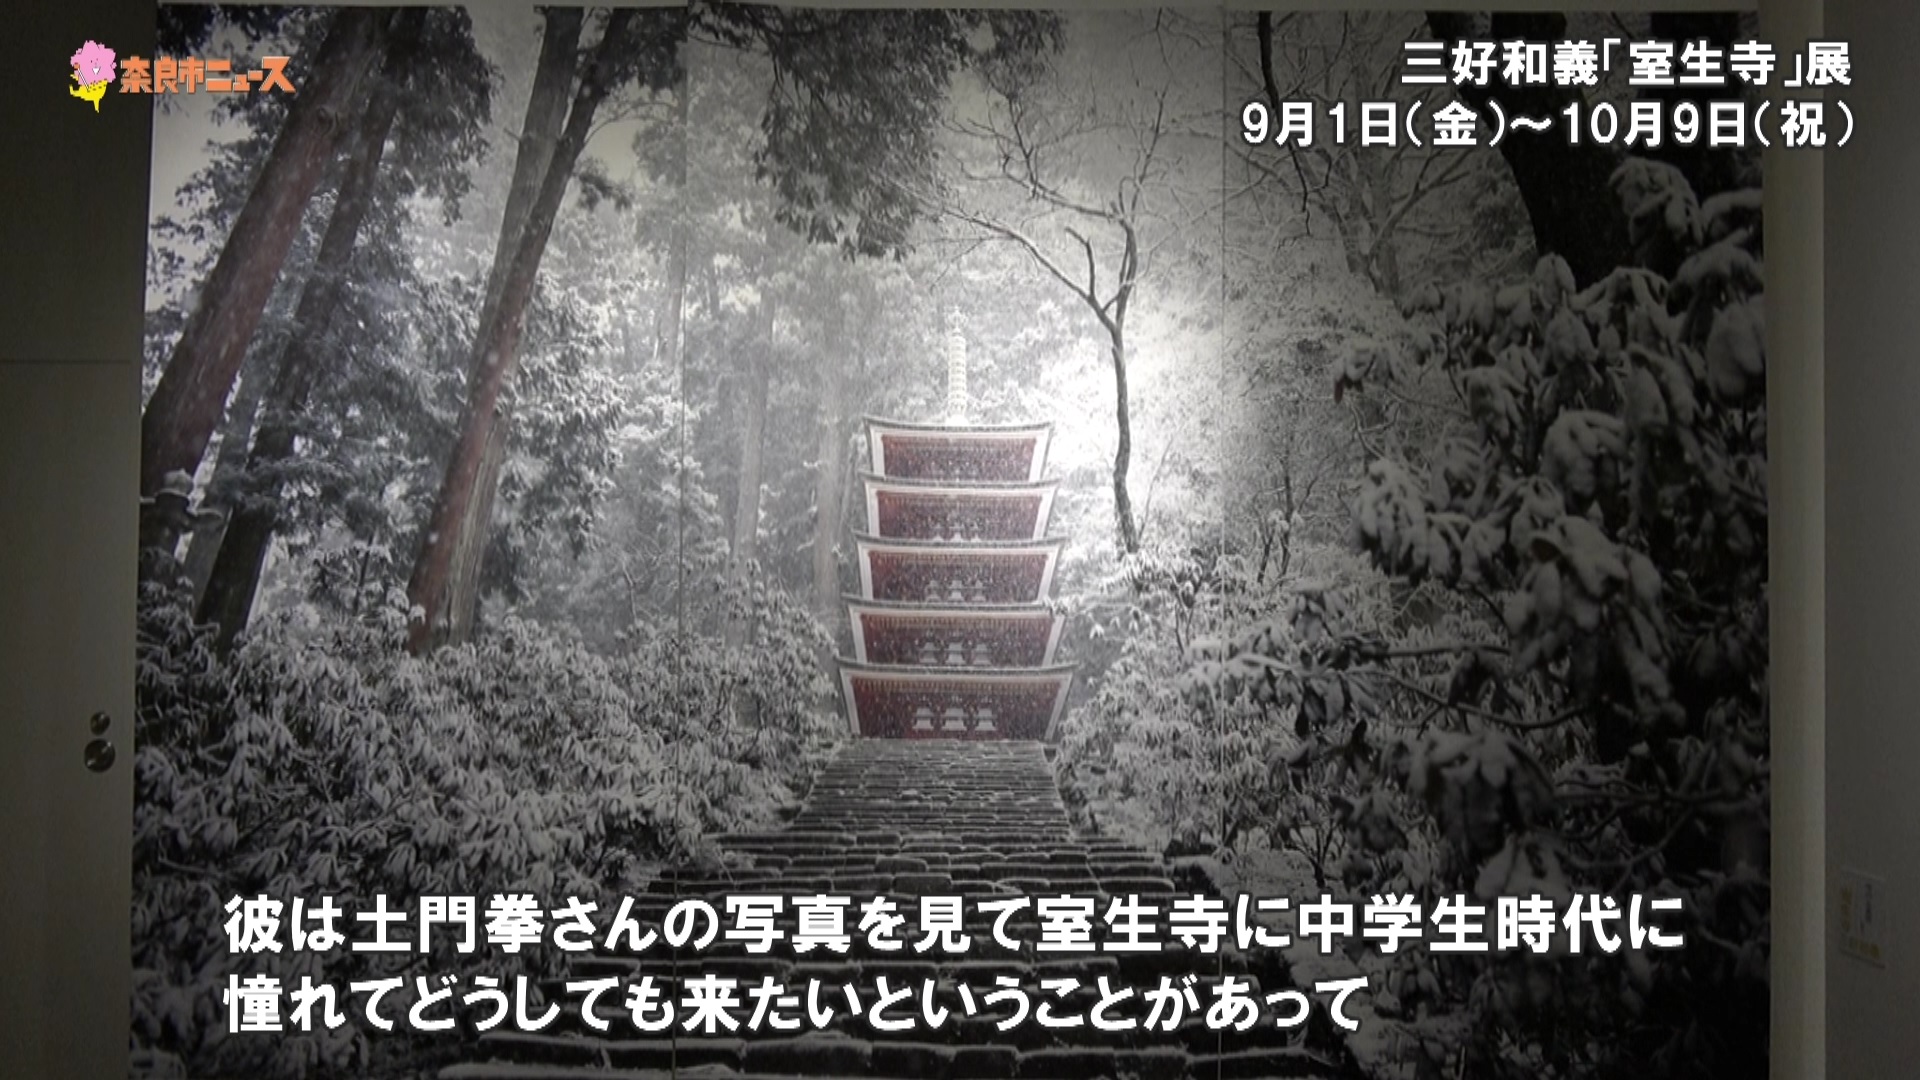 「奈良を視る」展　開催中!の画像